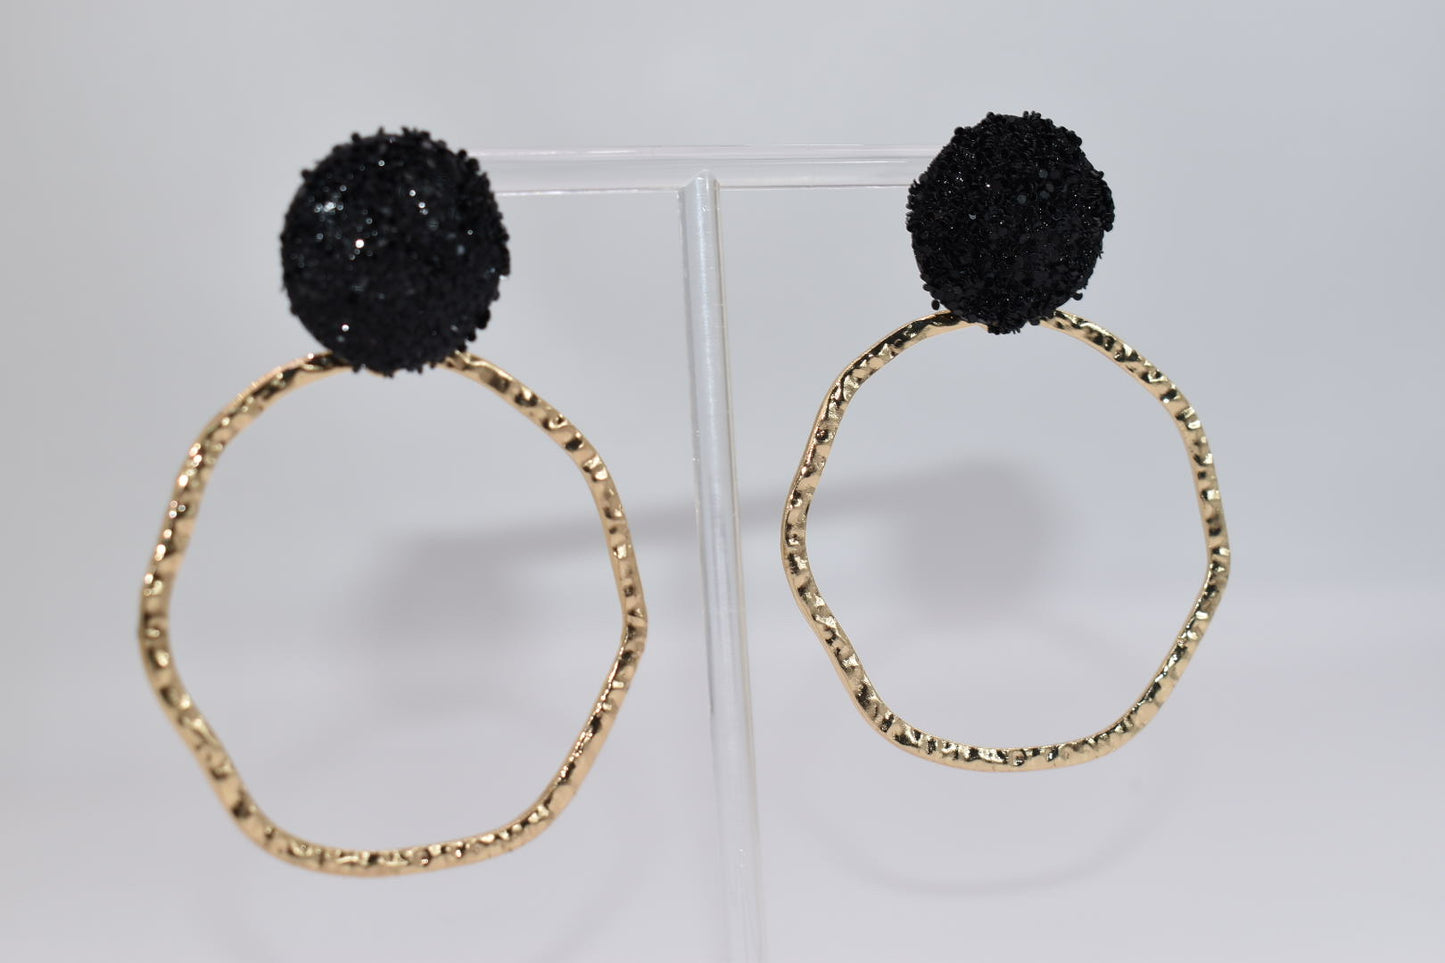 Statement Earrings: Glitter Top Hoops Black Drop Earrings